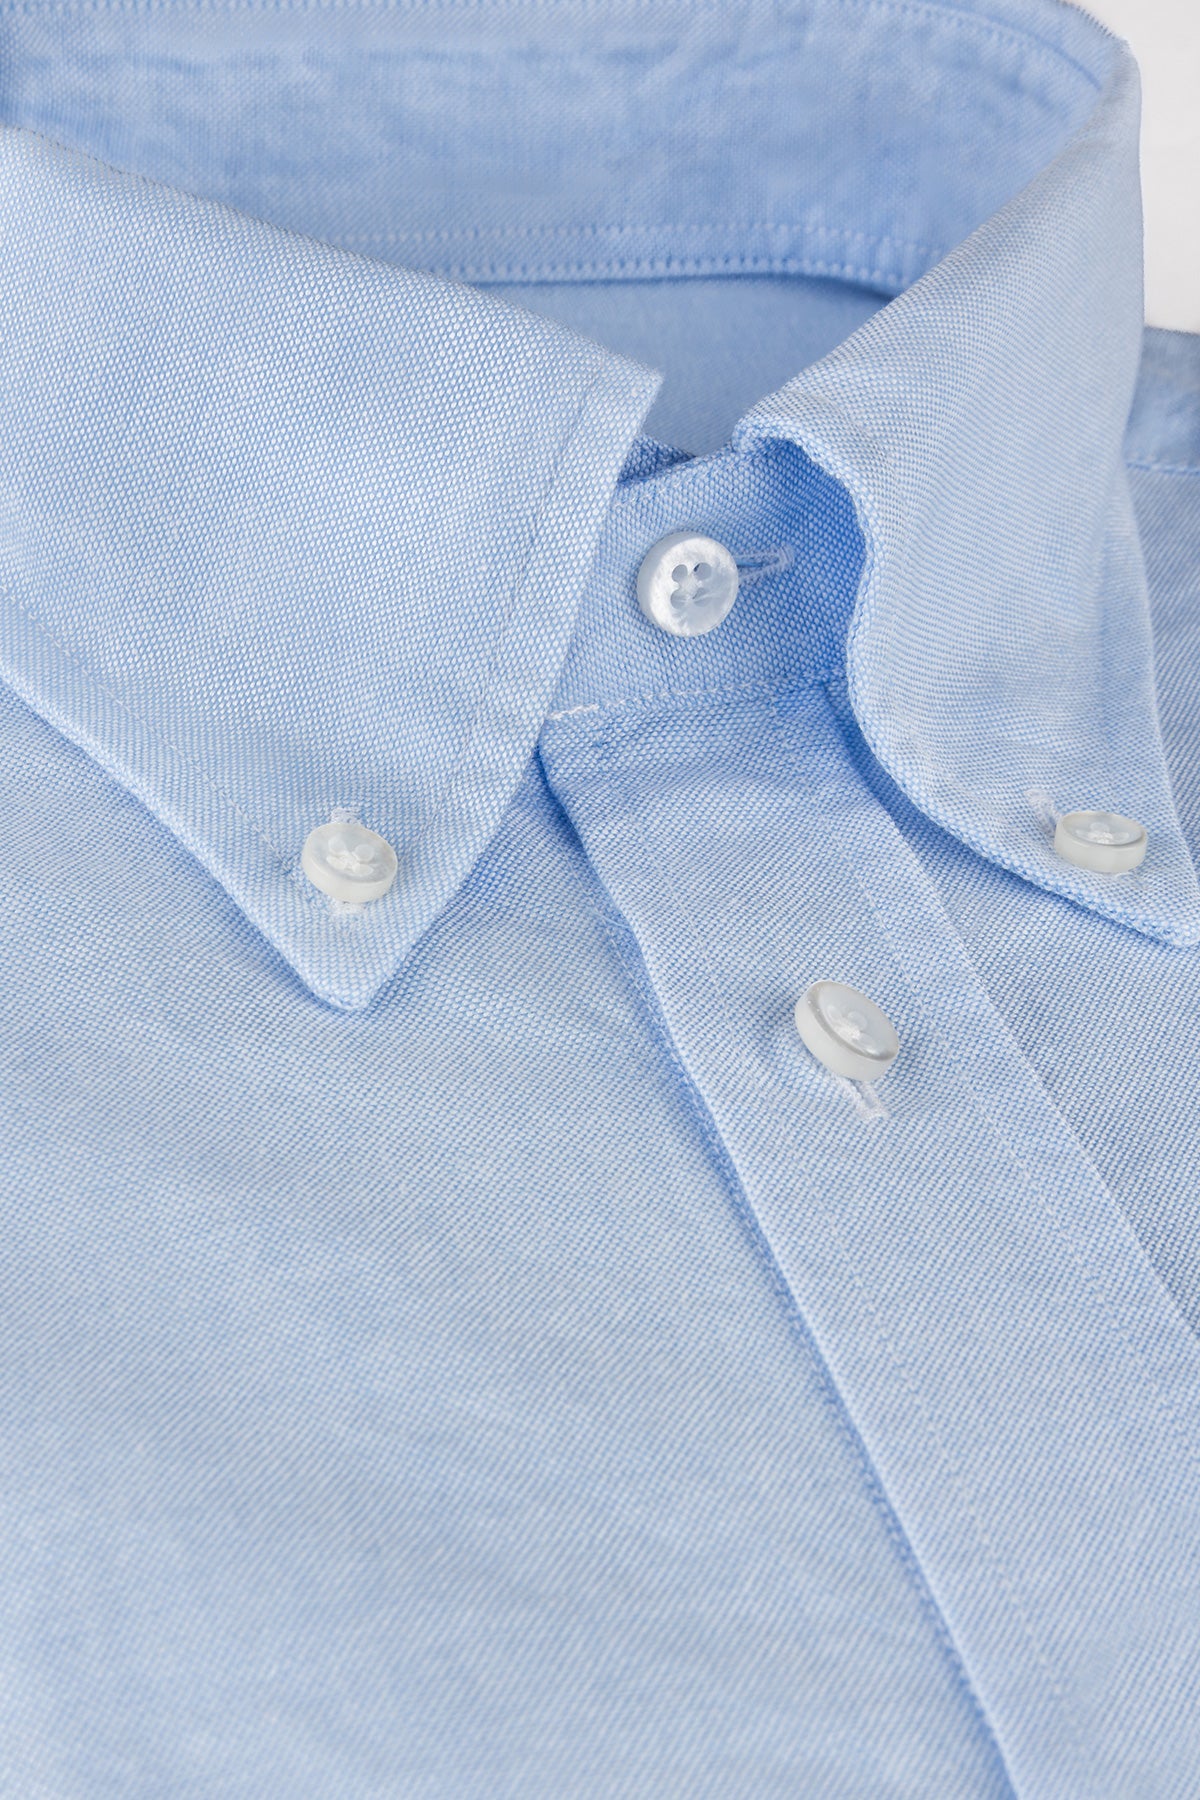 Light blue button down oxford regular fit shirt